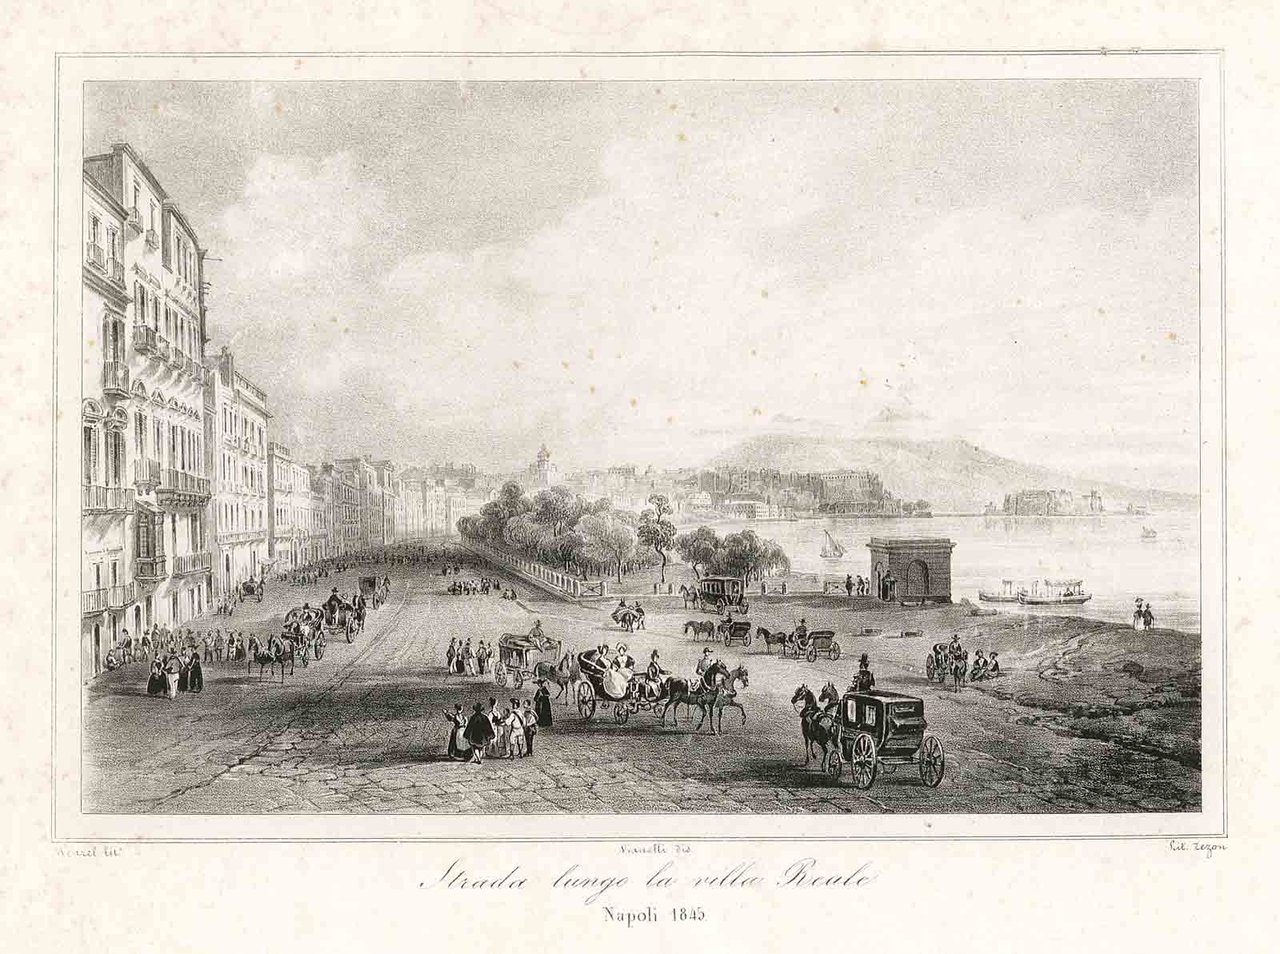 Strada lungo la villa Reale / Napoli 1845